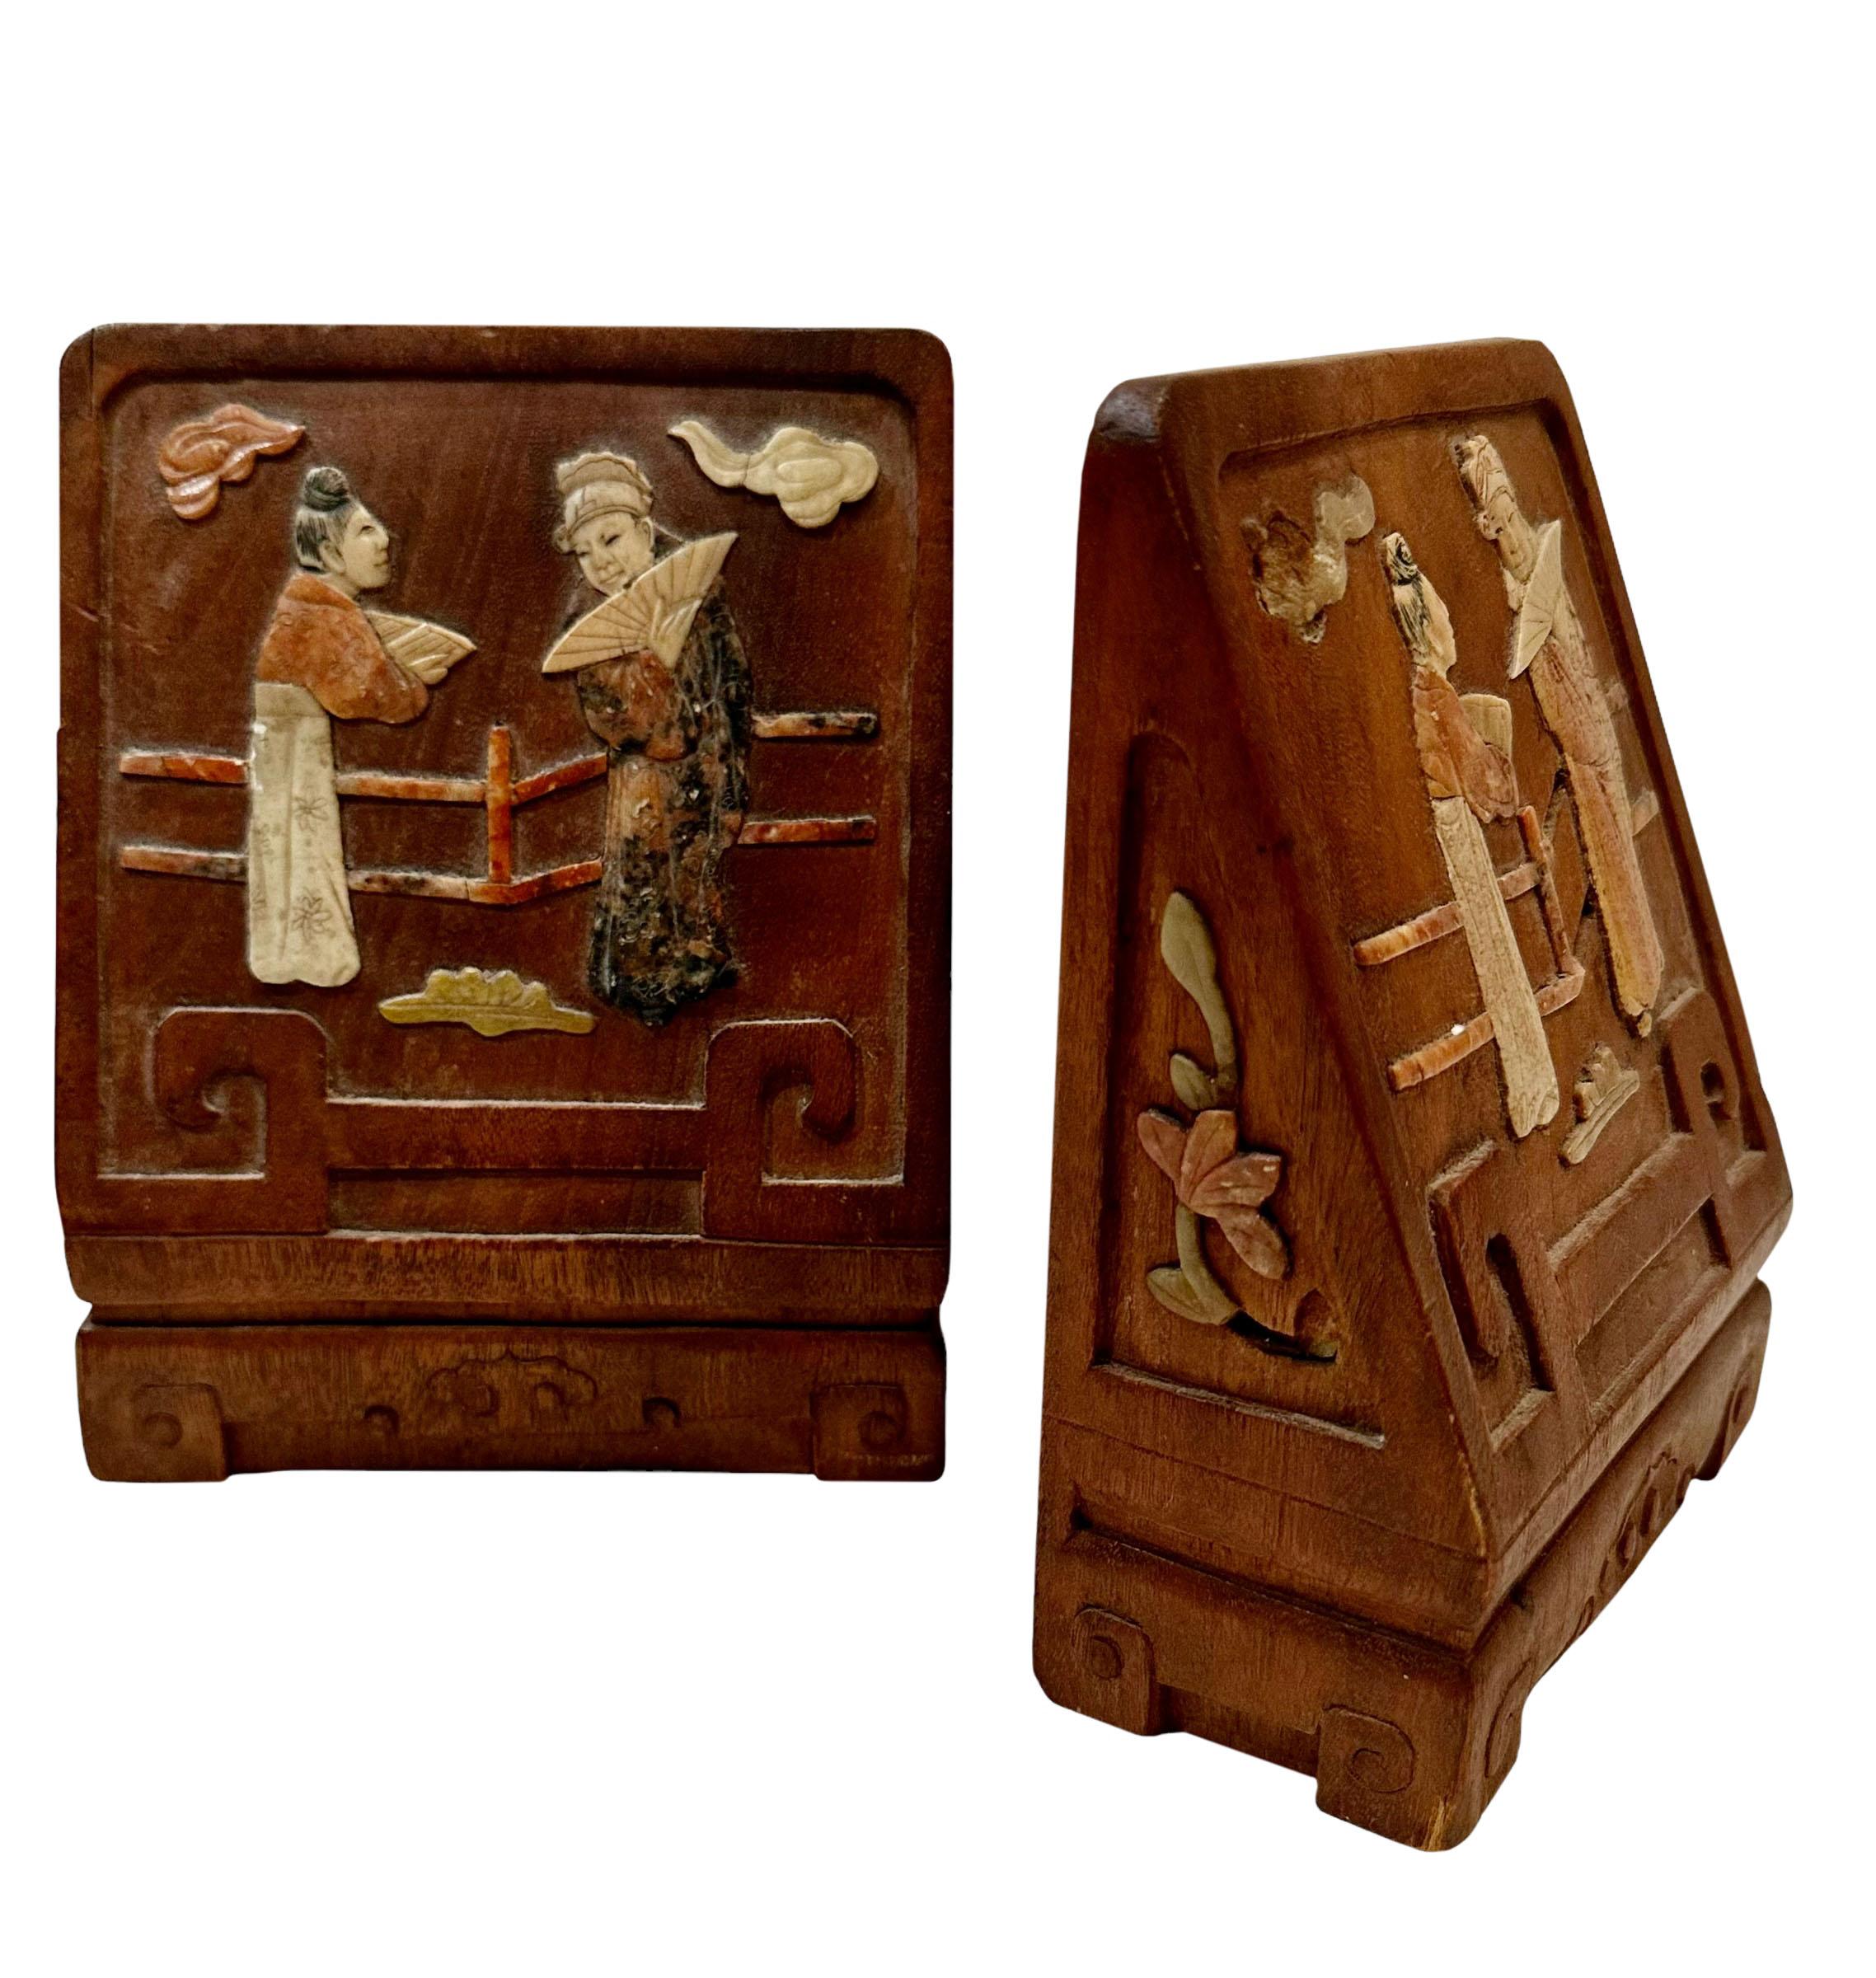 Ein Paar chinesische geschnitzte Teakholz-Buchstützen aus den 1920er Jahren, die mit Speckstein eingelegt wurden, der ebenfalls mit Mustern geschnitzt wurde. Auf der Rückseite befindet sich ein Etikett, möglicherweise für den Import.